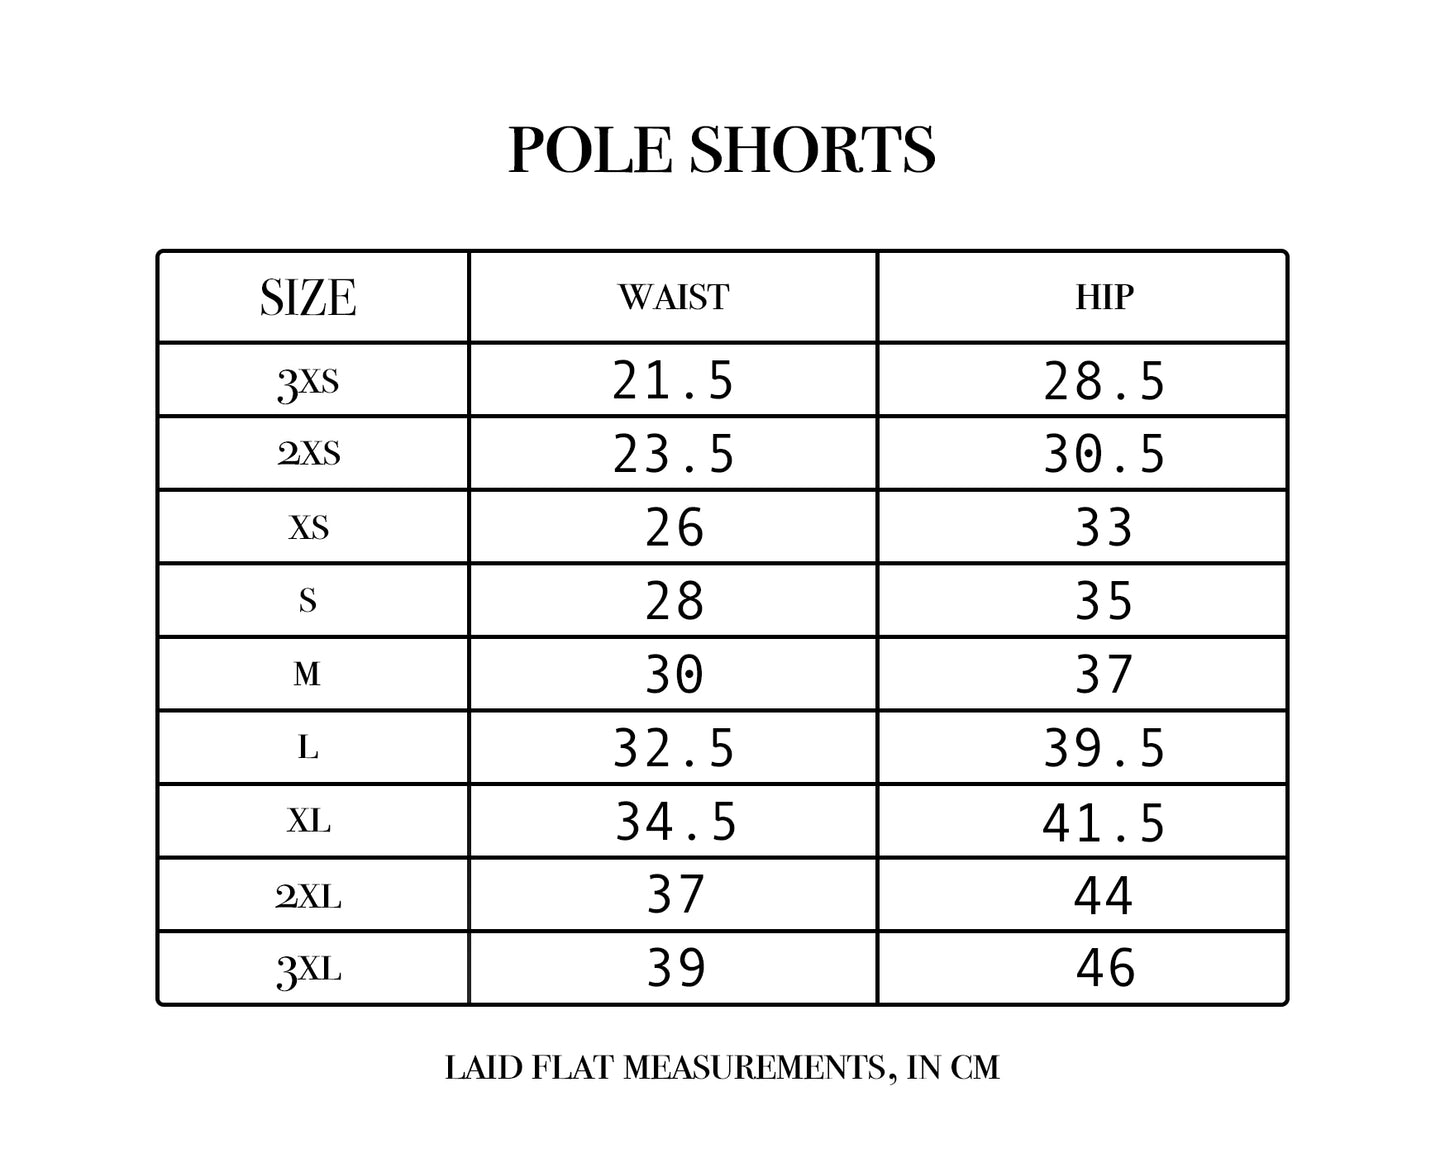 brightside pole shorts